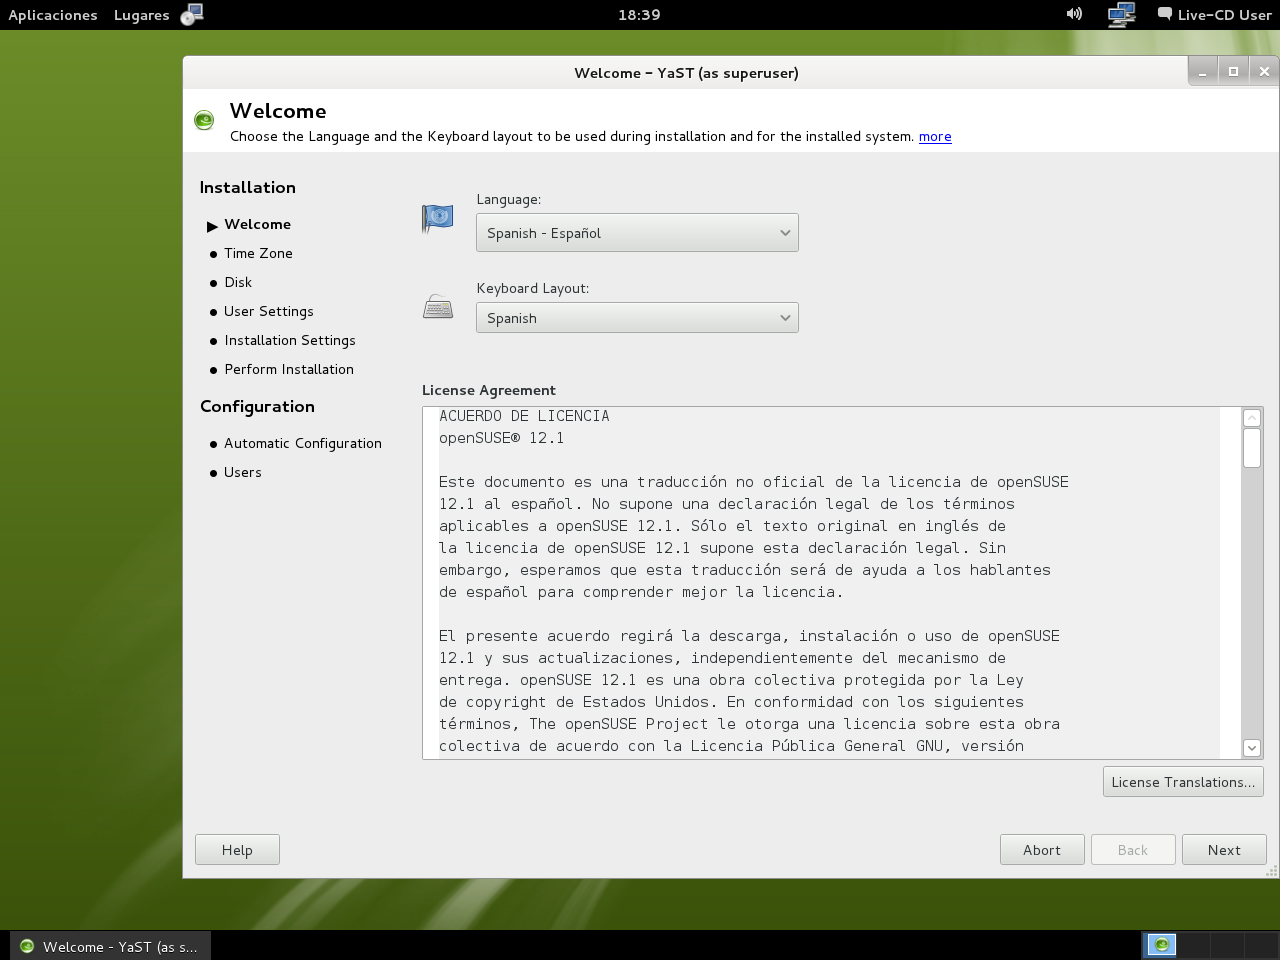 12.1 InstalaciÃ³n LiveCD GNOME 04 - InstalaciÃ³n - Acuerdo de Licencia.png